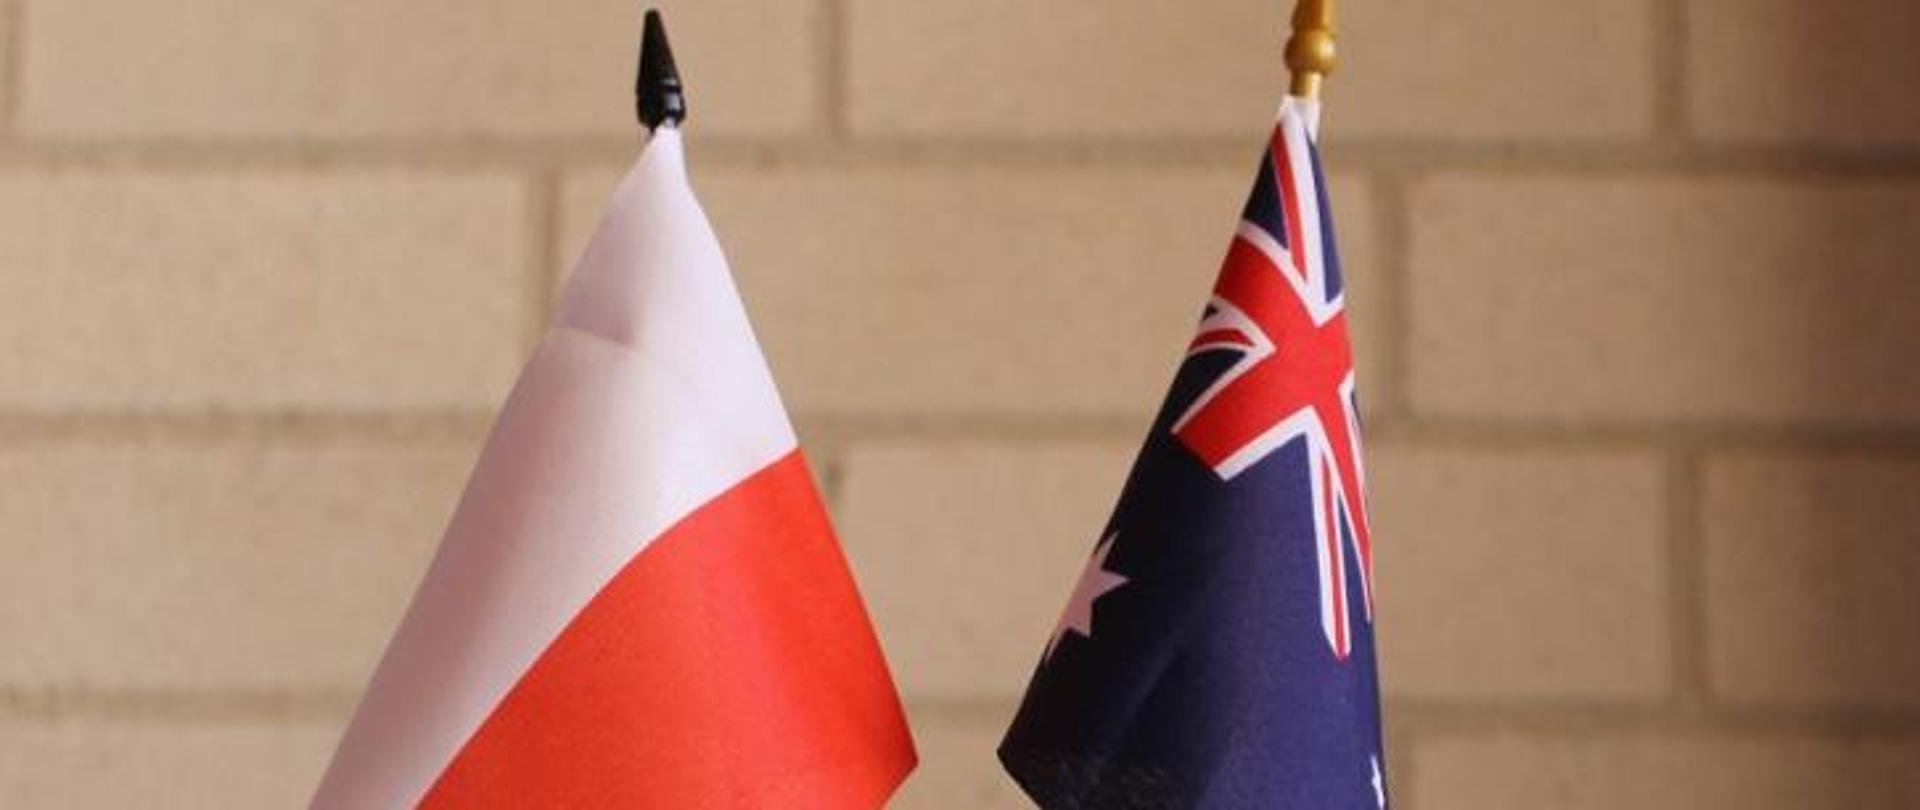 Flagi_Polska_i_Australia